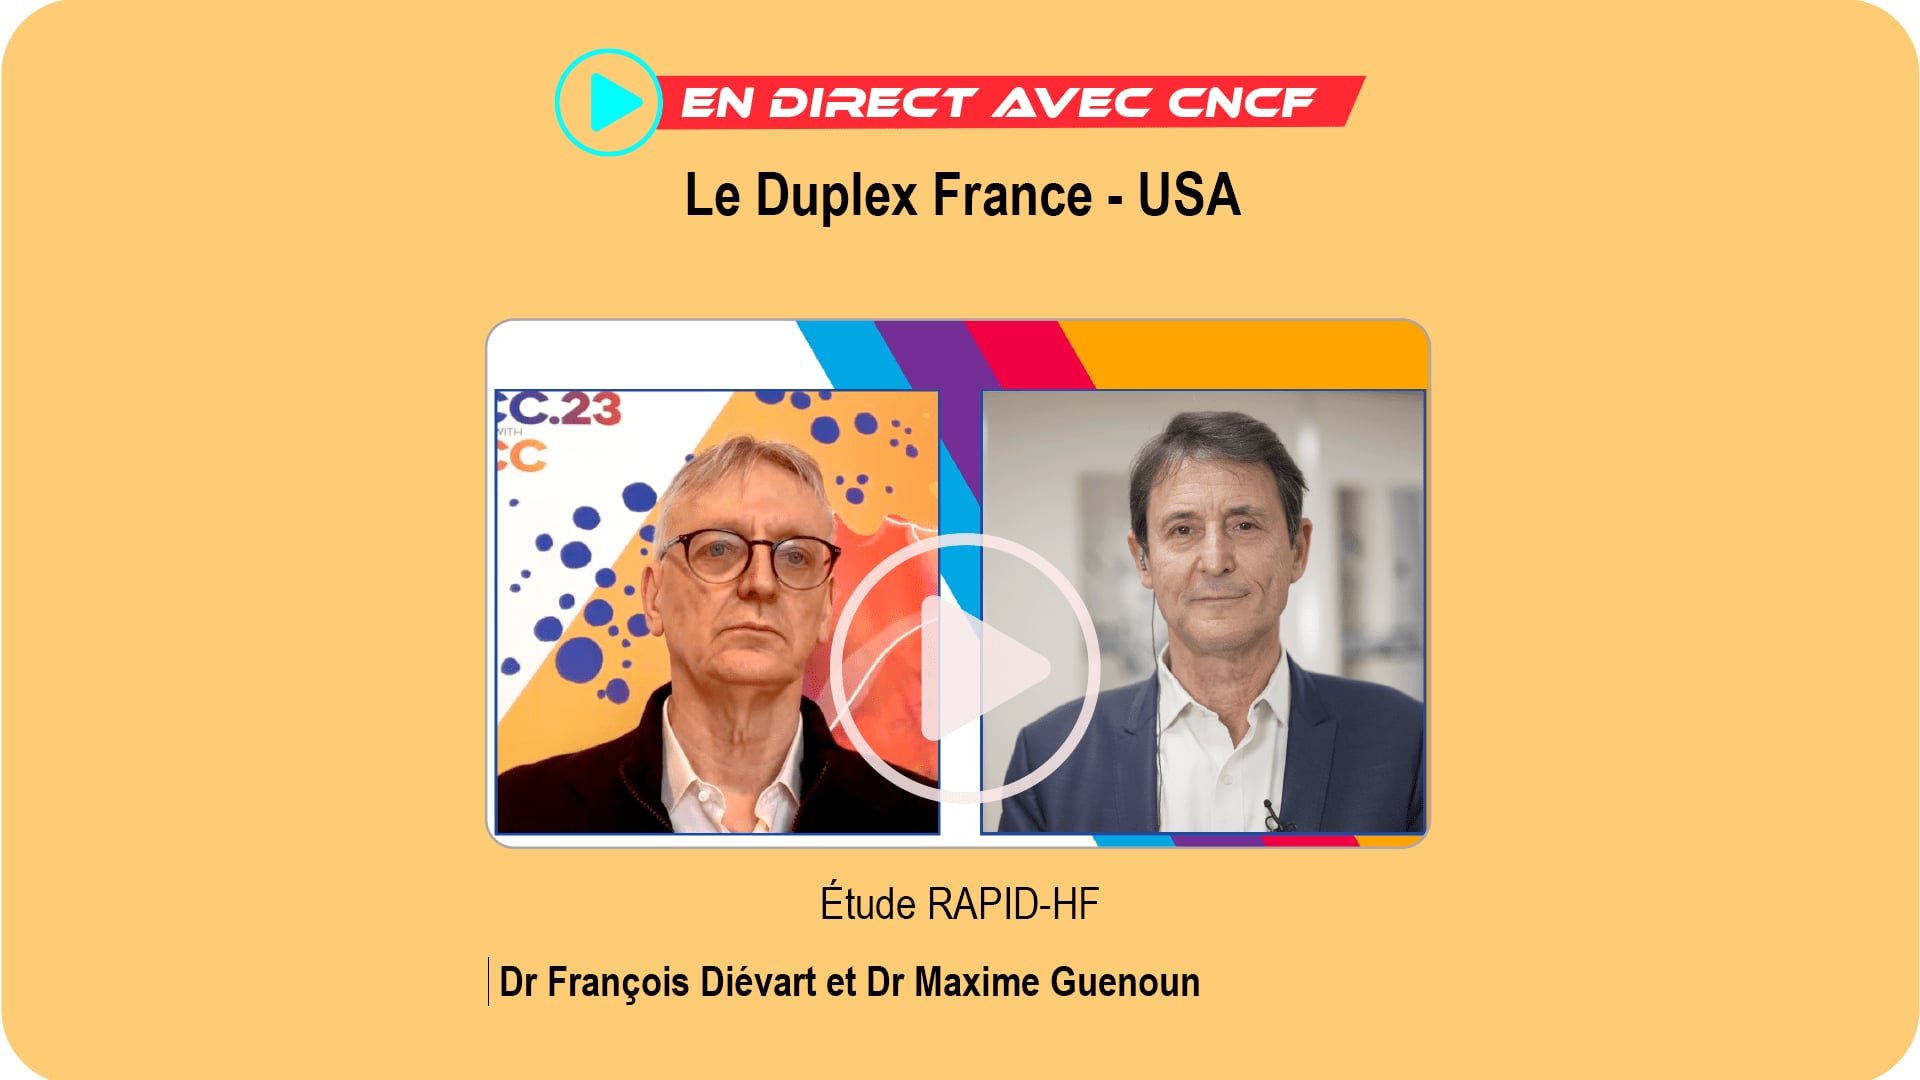 En direct avec CNCF : e Duplex France - USA - ACC 2023